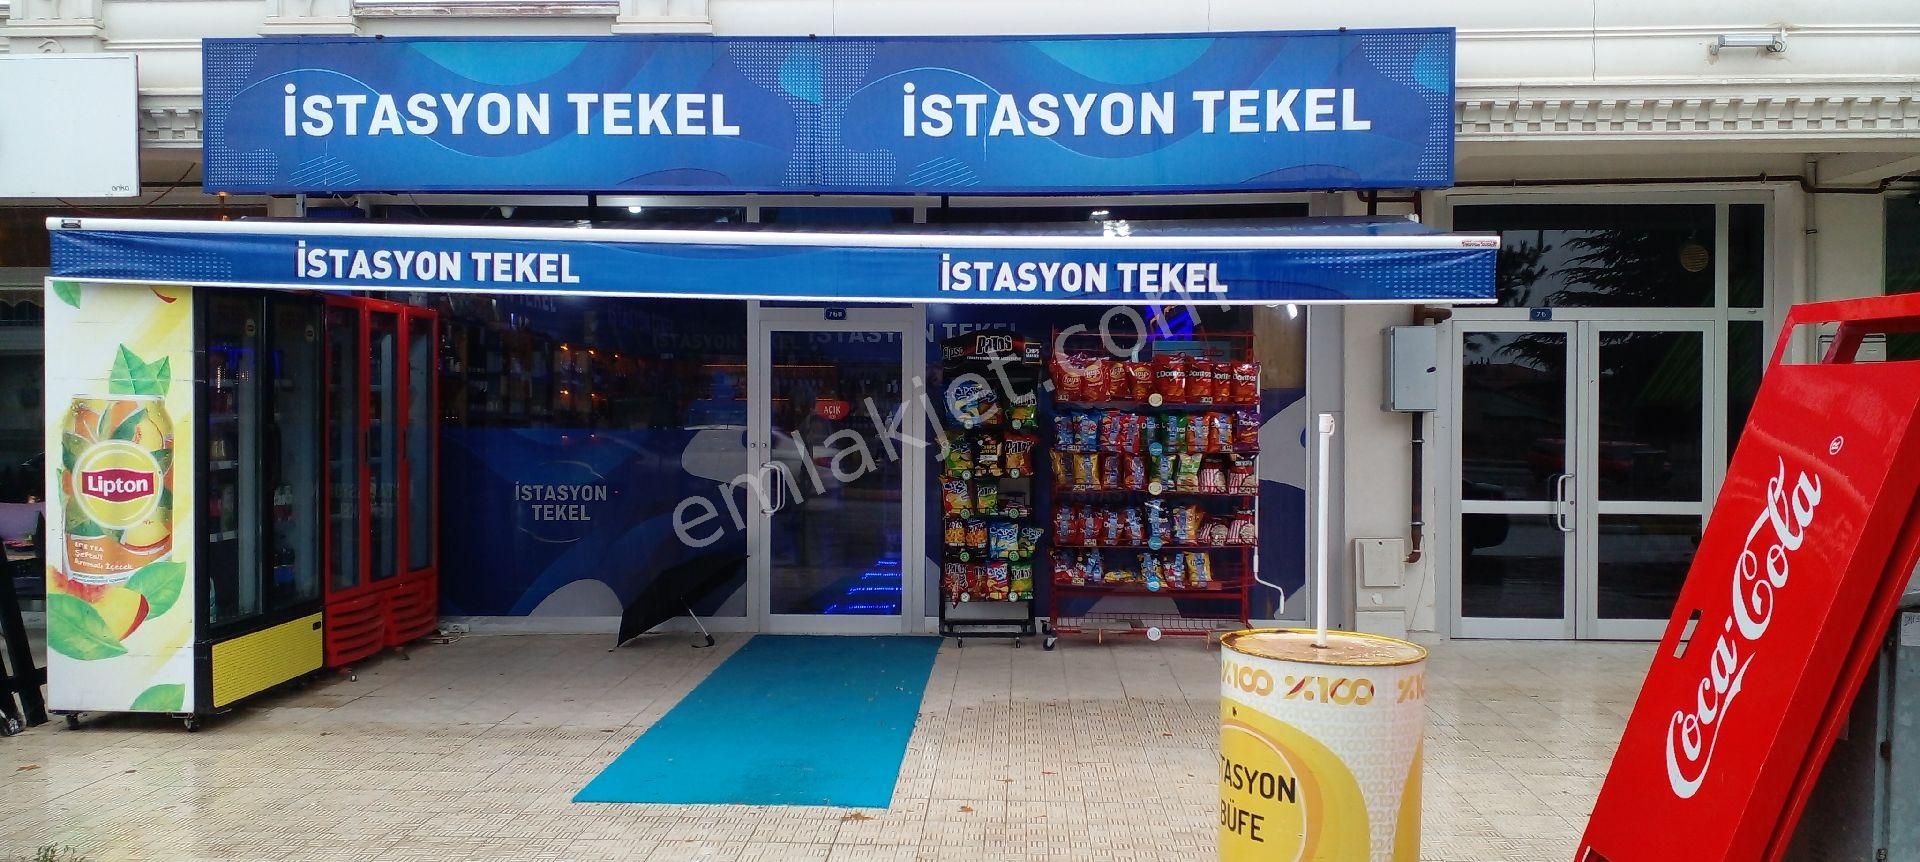 Erzincan Merkez Barbaros Satılık Dükkan & Mağaza Kırklar caddesinde Acil satılık dükkan